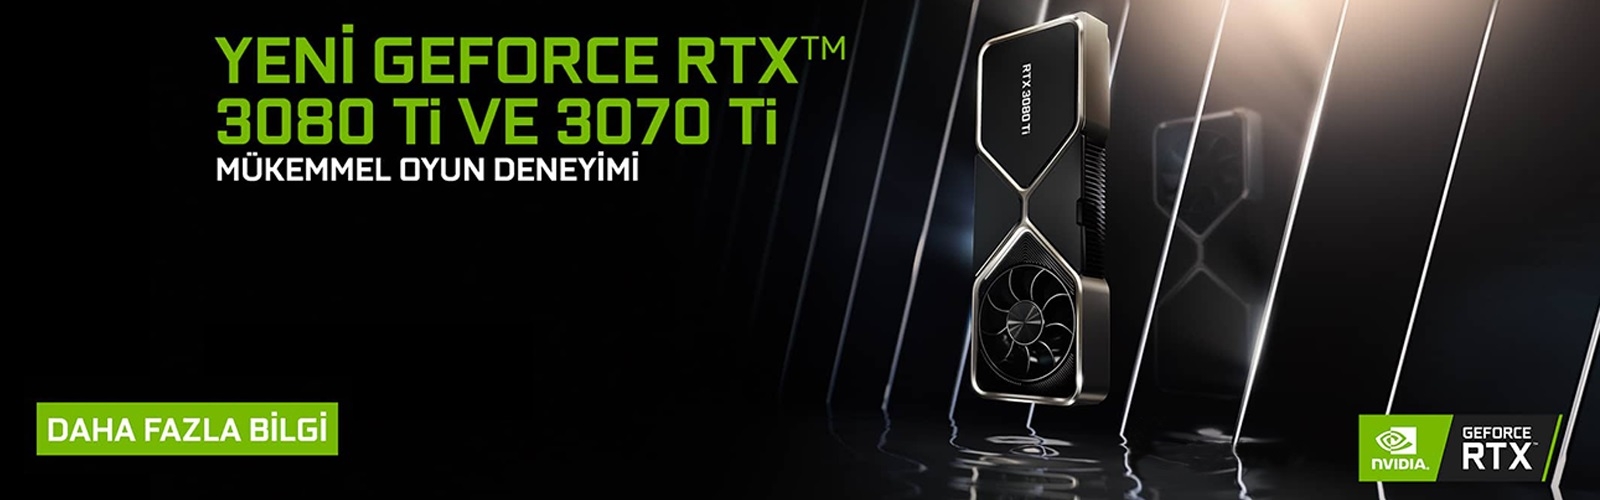 GeForce RTX 3080 TI